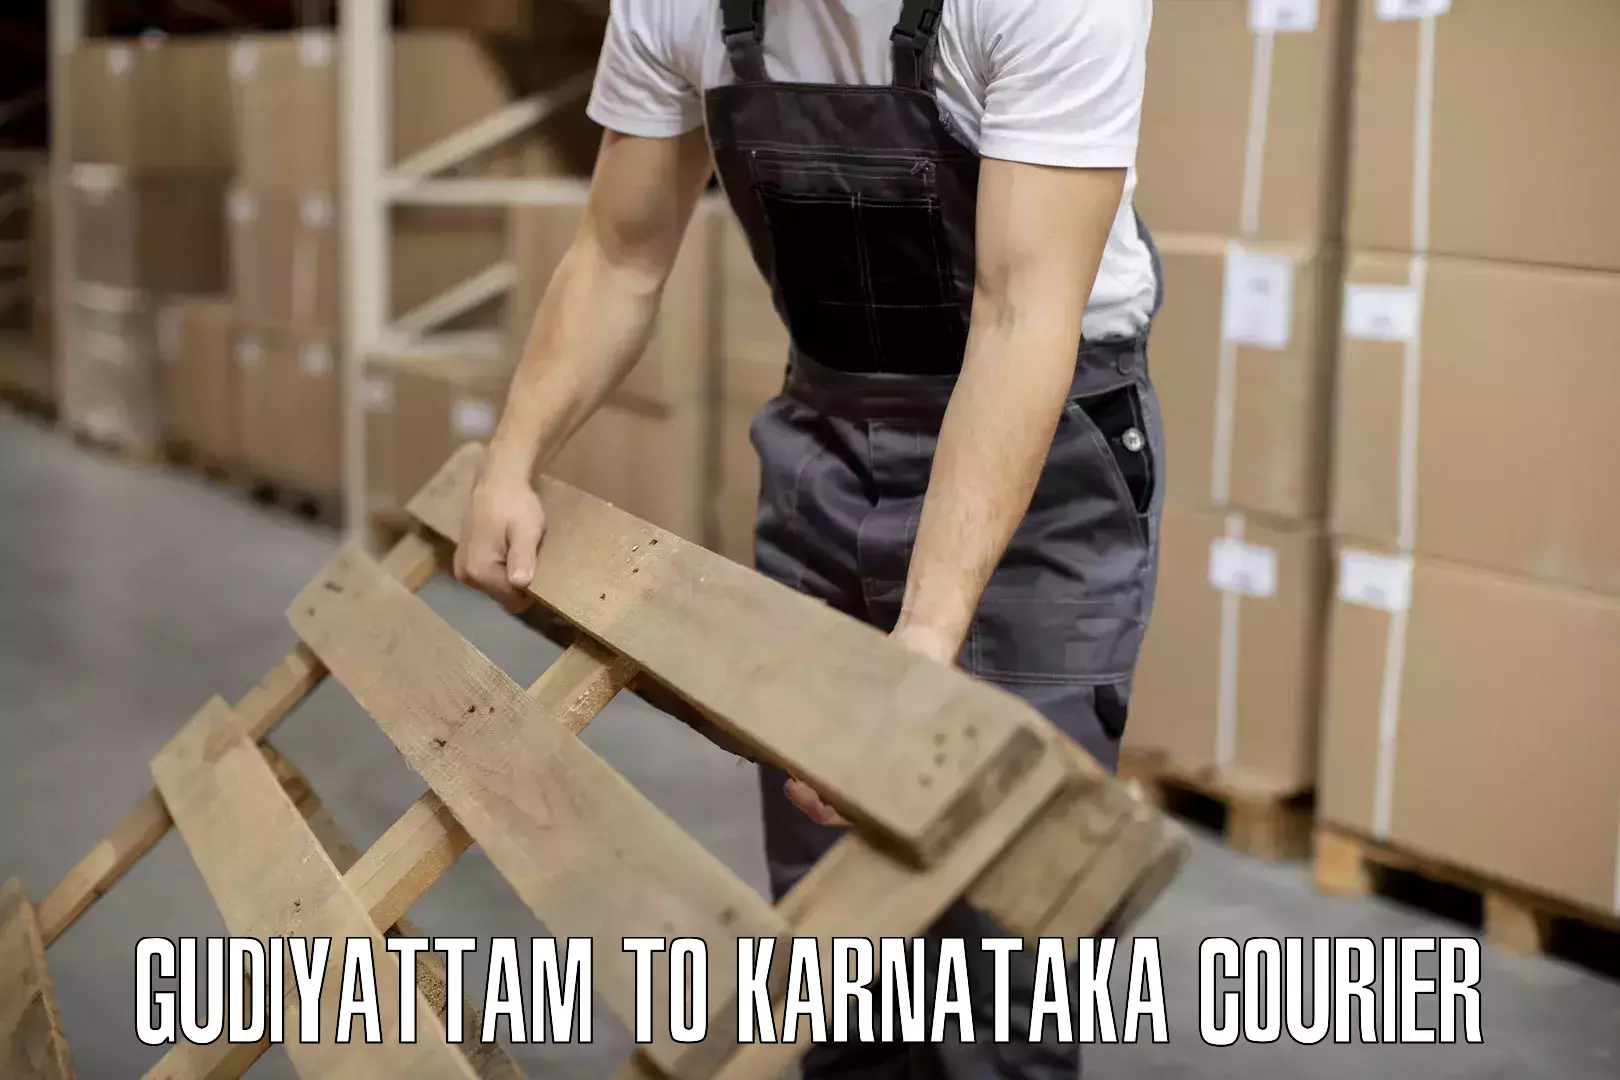 Luggage shipment specialists Gudiyattam to Karnataka